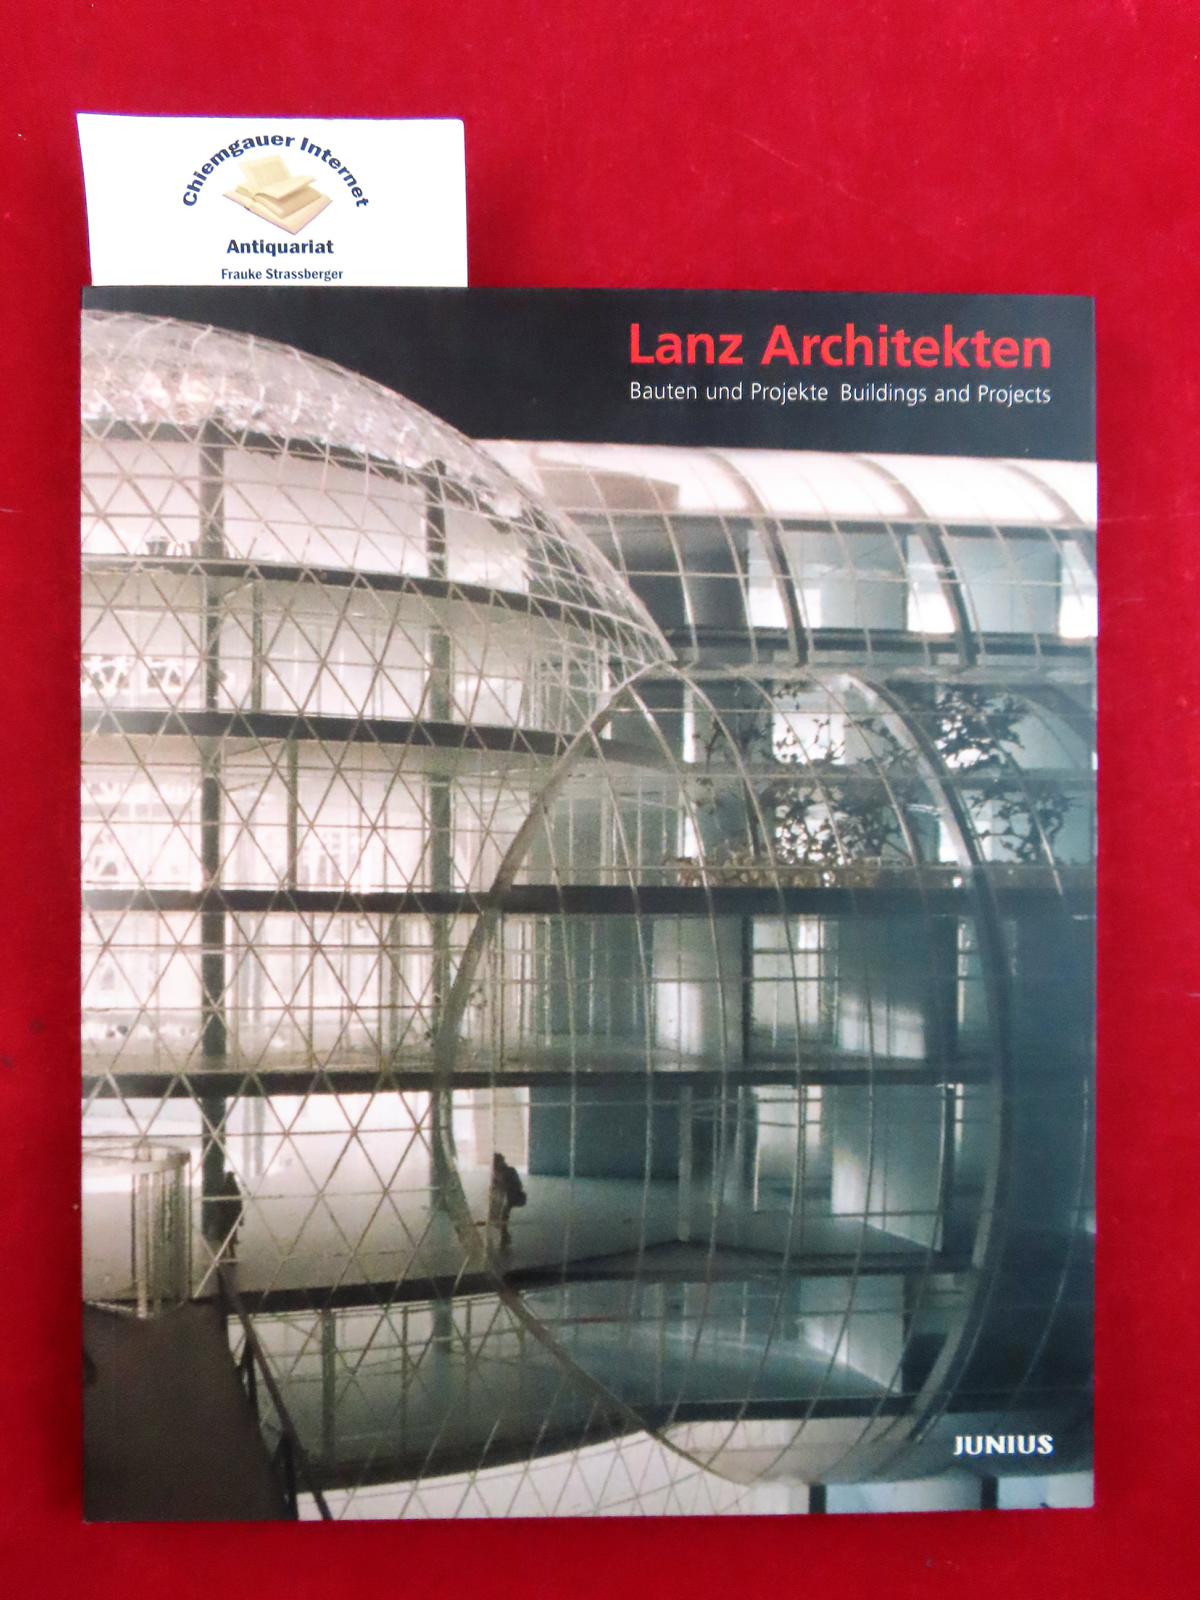 Lanz Architekten, Bauten und Projekte : 1956 - 2005 = Lanz Architekten, buildings and projects. Mit Beiträgen von Sunna Gailhofer u.a. - Walterspiel Barth, Katharina (Herausgeber)